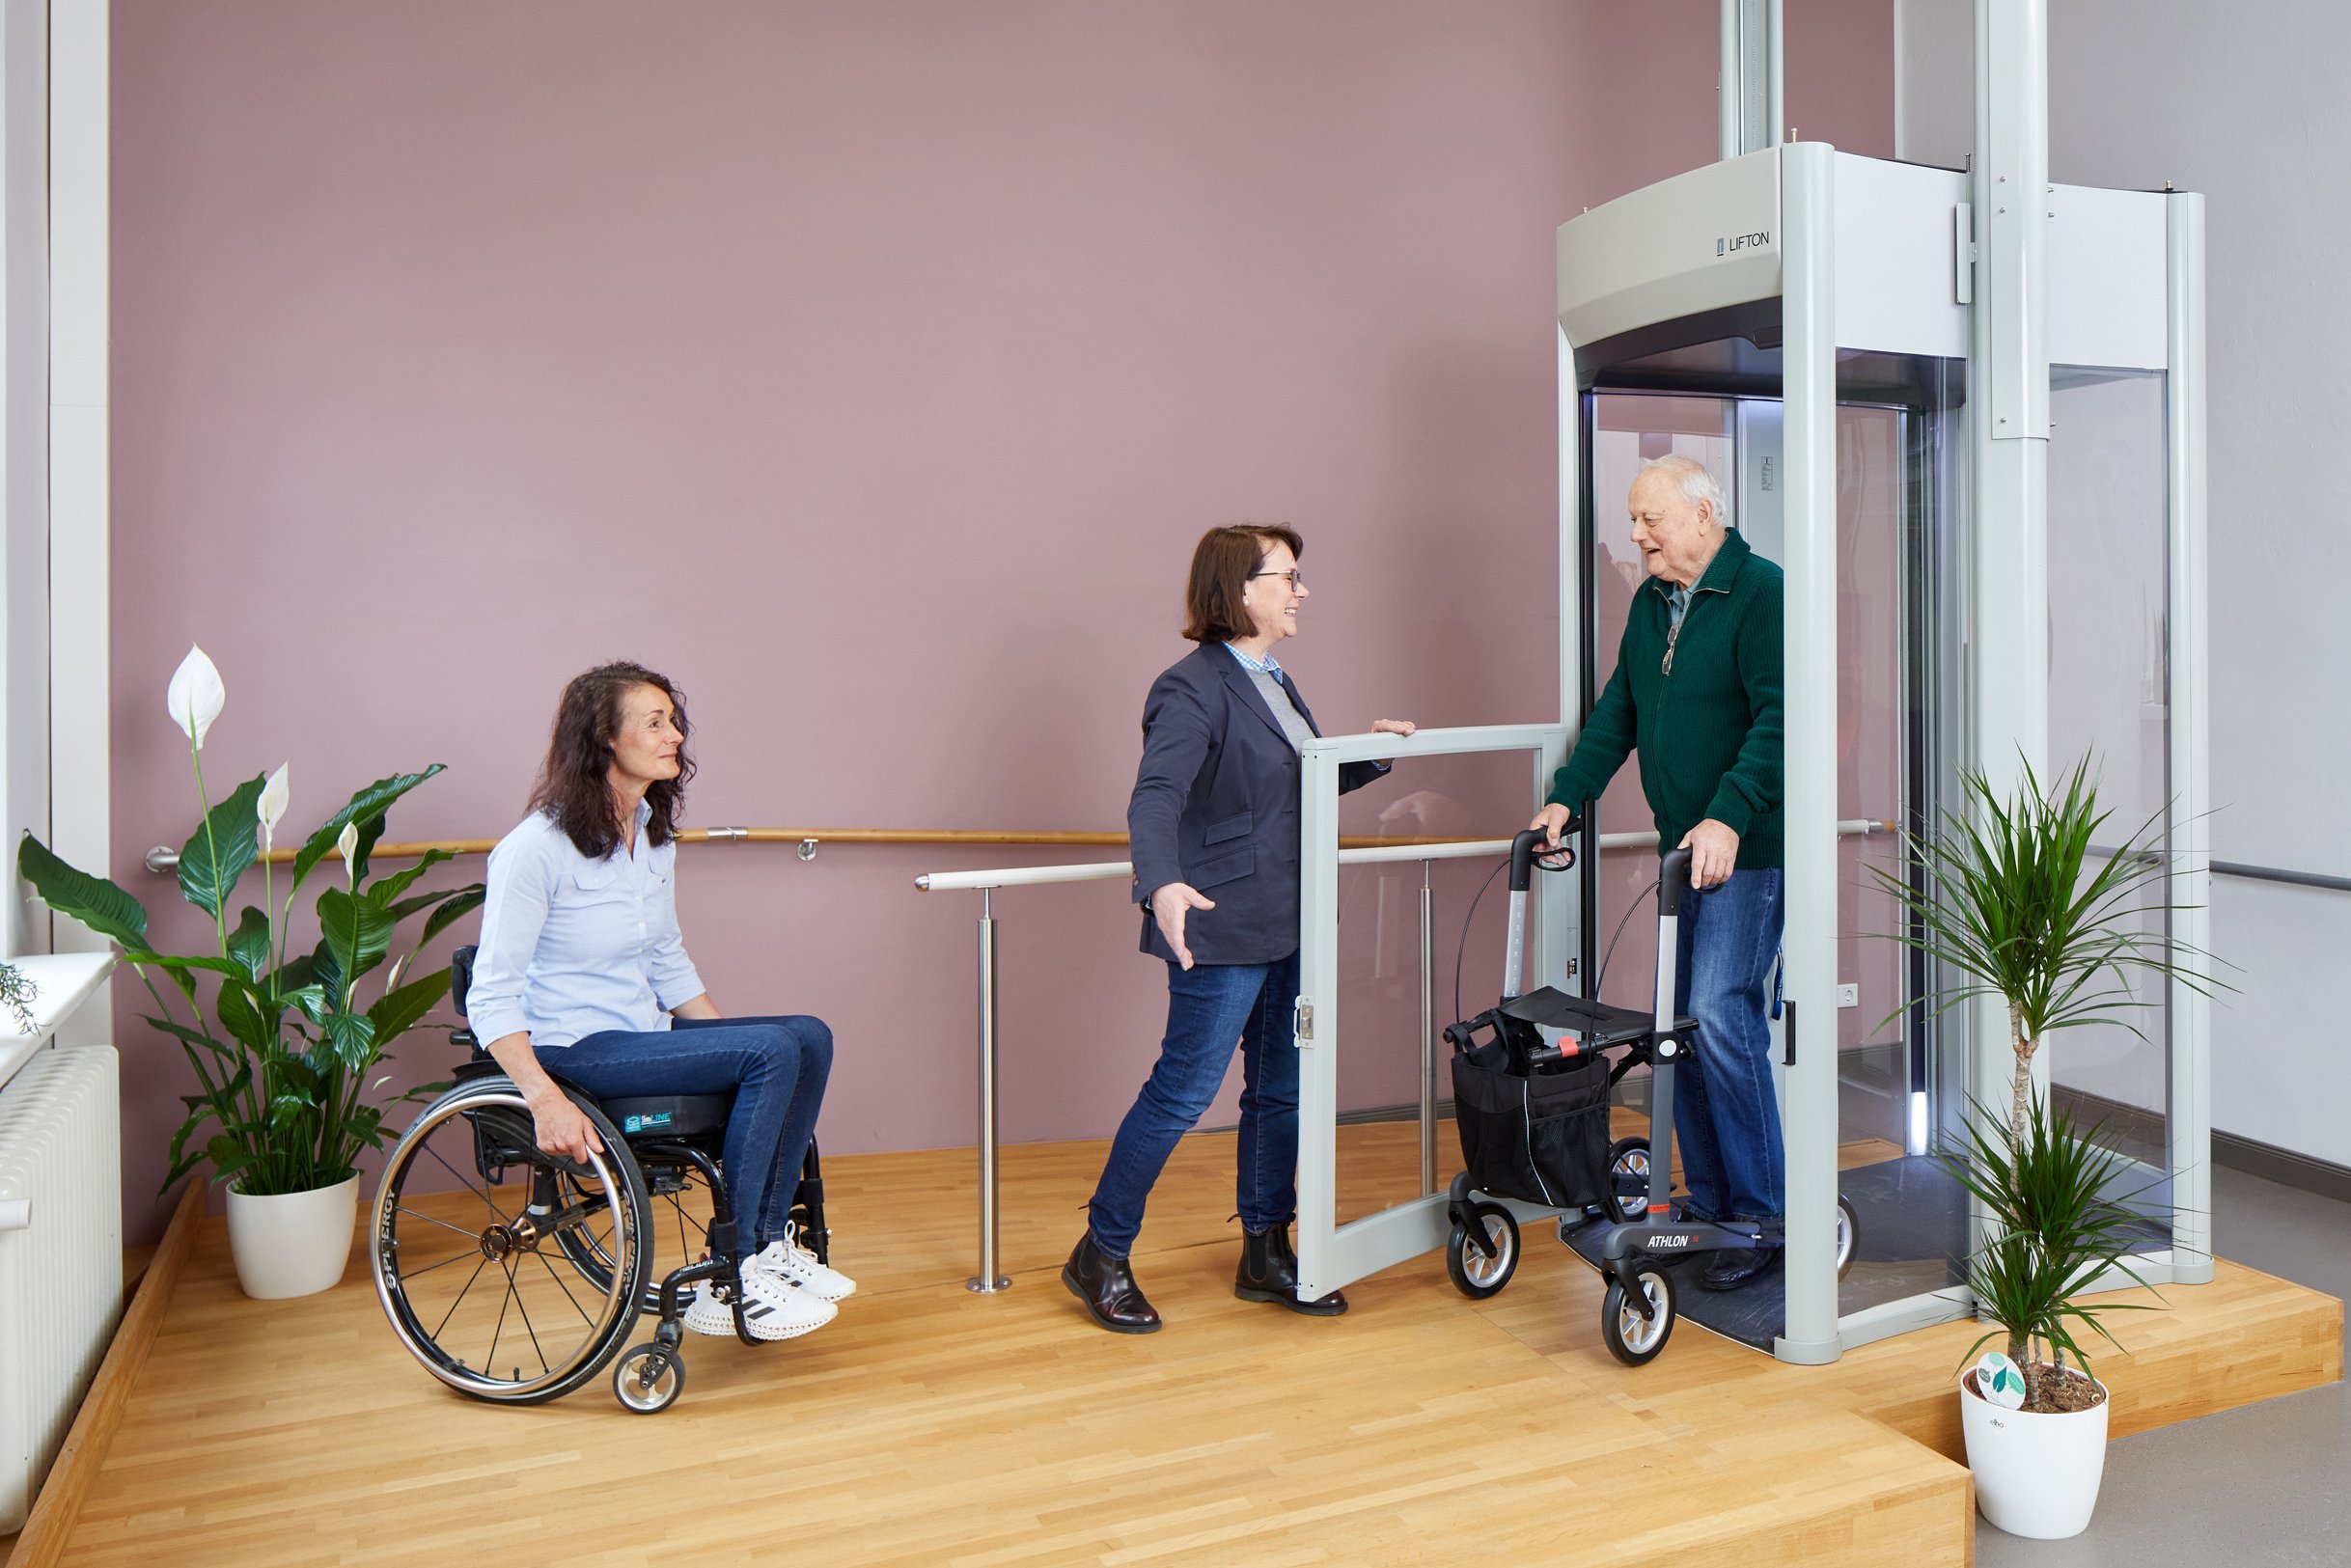 Das Bild zeigt einen Ausstellungsraum mit einem Homelift. Aus dem Lift steigt ein Besucher mit Rollator. Vor dem Lift steht eine Frau im Rollstuhl.